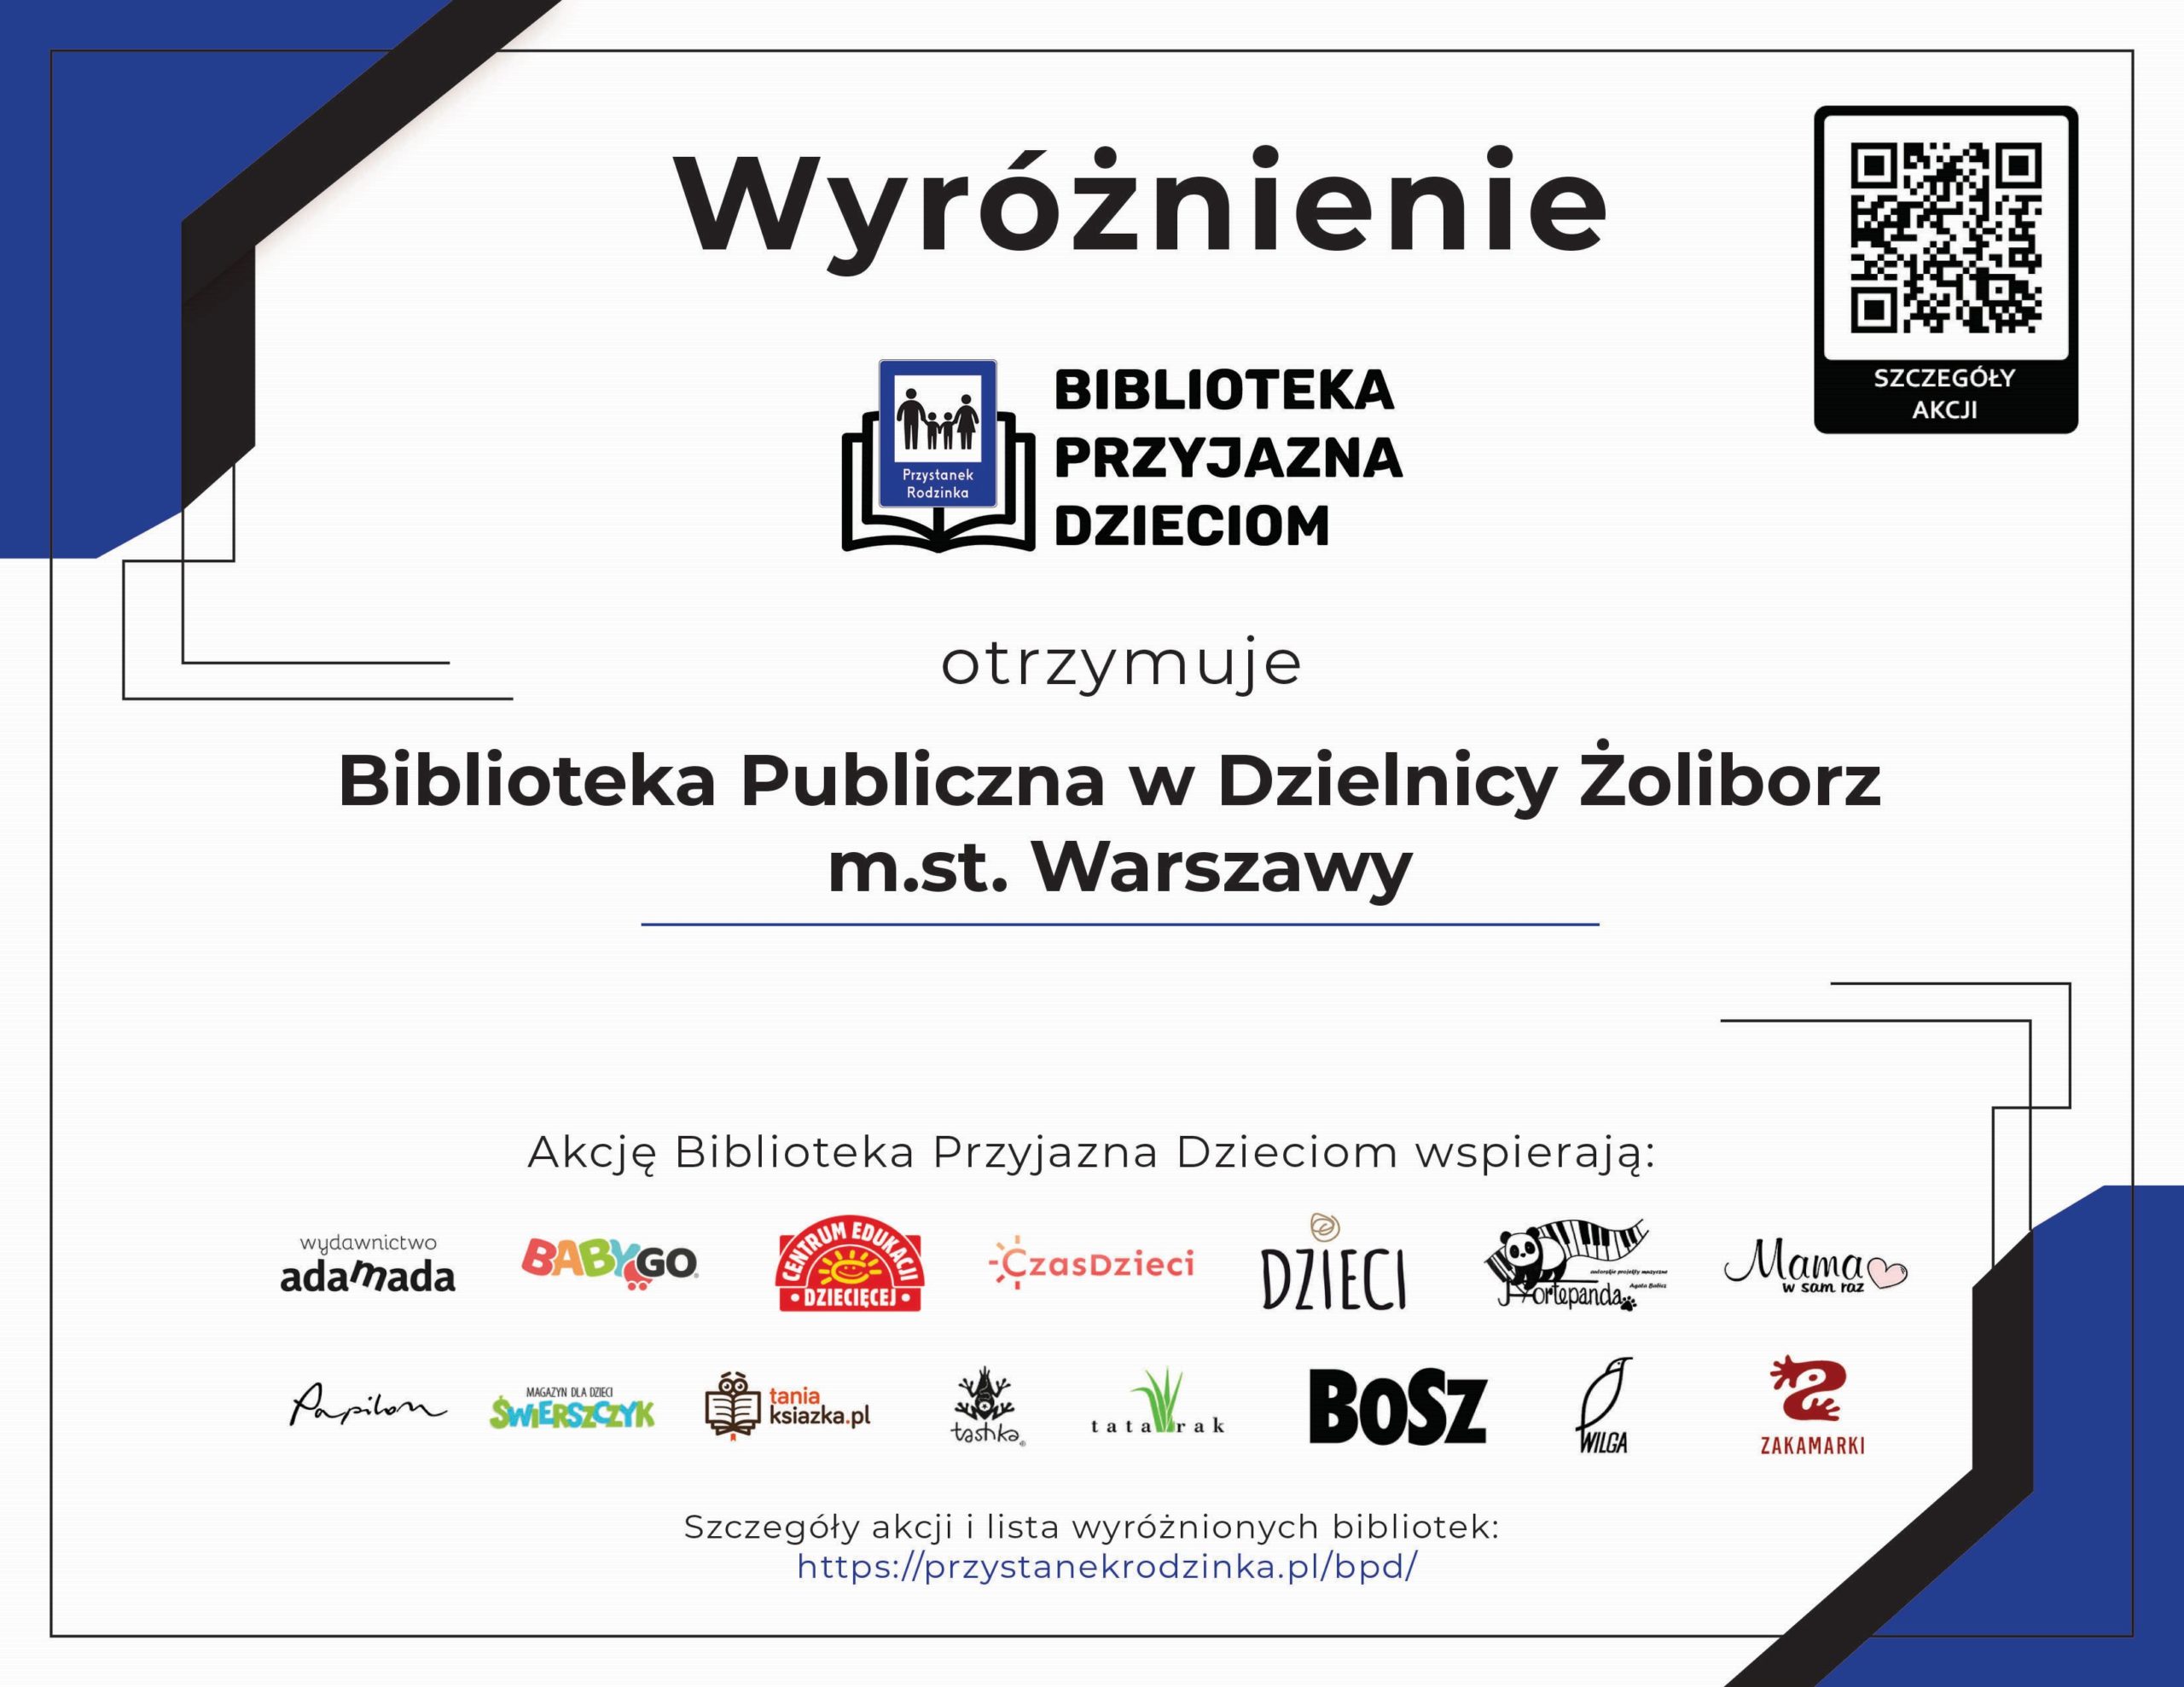 Dyplom, wyróżnienie Biblioteka Przyjazna Dzieciom otrzymuje Biblioteka Publiczna w Dzielnicy Żoliborz m. st. Warszawy . Wyróżnienie przyznana przez portal Przystanek Rodzinka.